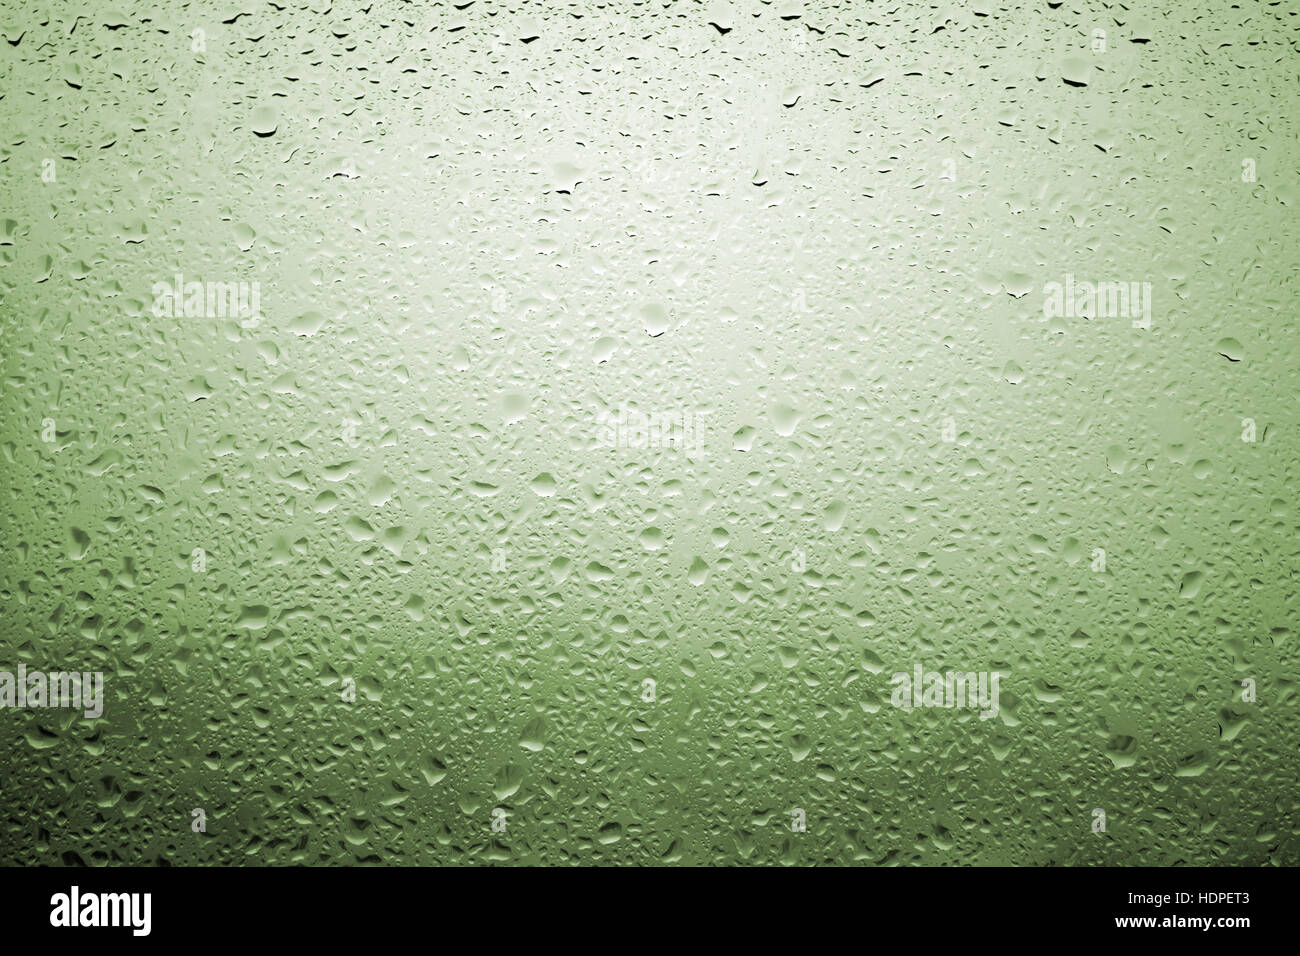 Gouttes de pluie sur une vitre de fenêtre avec paysage très diffuse de couleur vert jaunâtre Banque D'Images